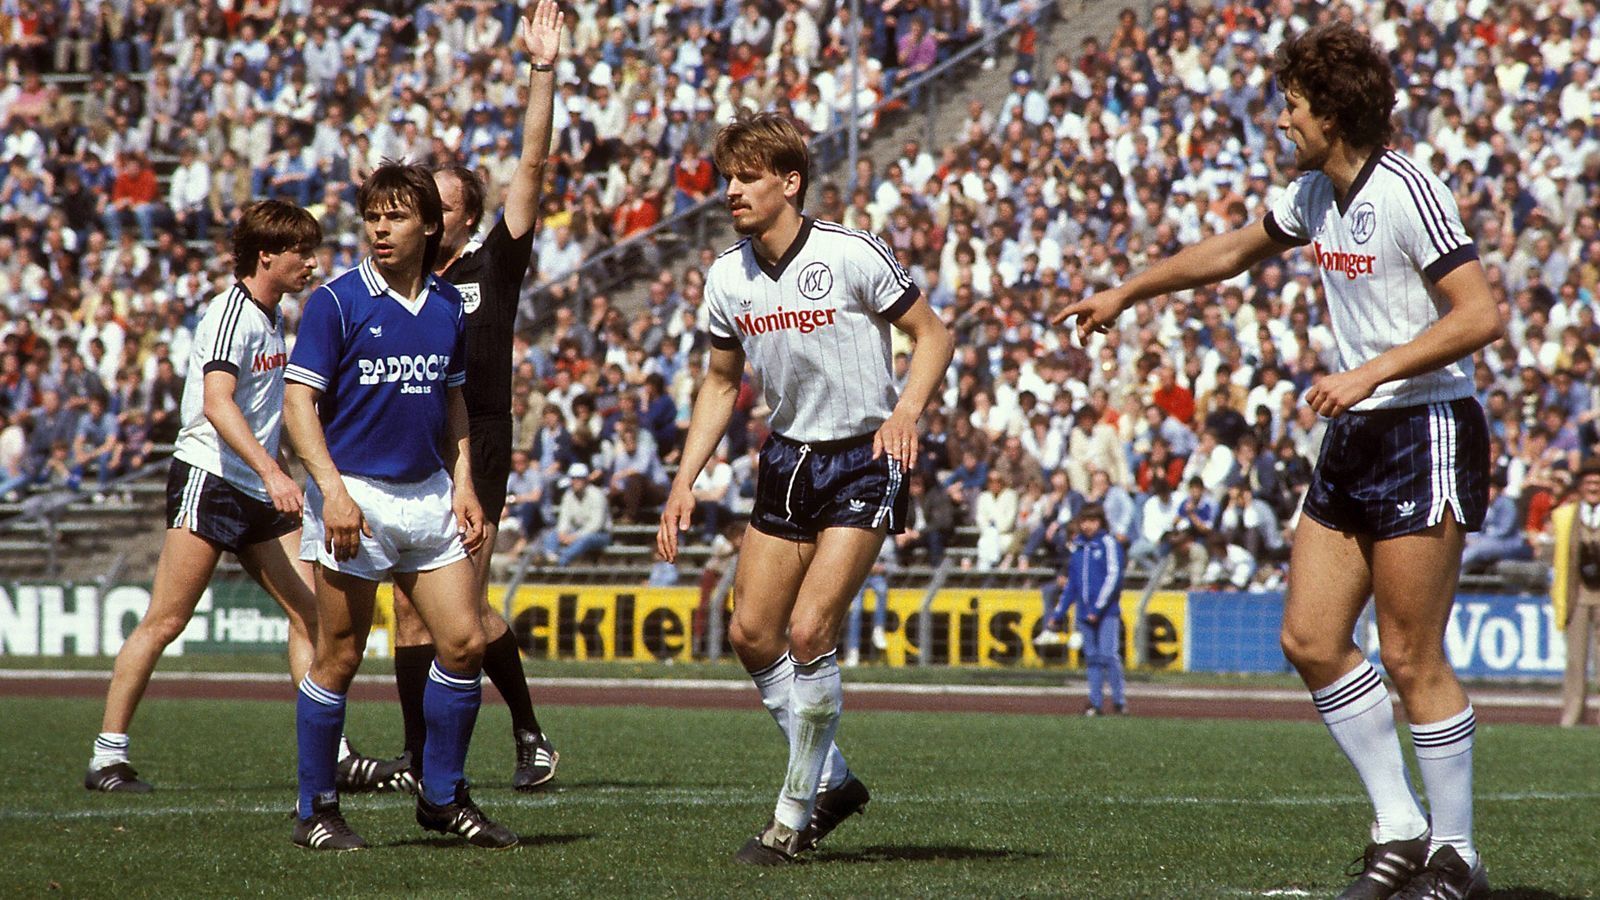 
                <strong>Platz 5 - Olaf Thon (FC Schalke 04)</strong><br>
                Alter zum Zeitpunkt des Tores: 17 Jahre, 8 Monate, 14 TageBegegnung: FC Schalke 04 - Karlsruher SC (Ergebnis: 2:1, 14. Januar 1984)
              